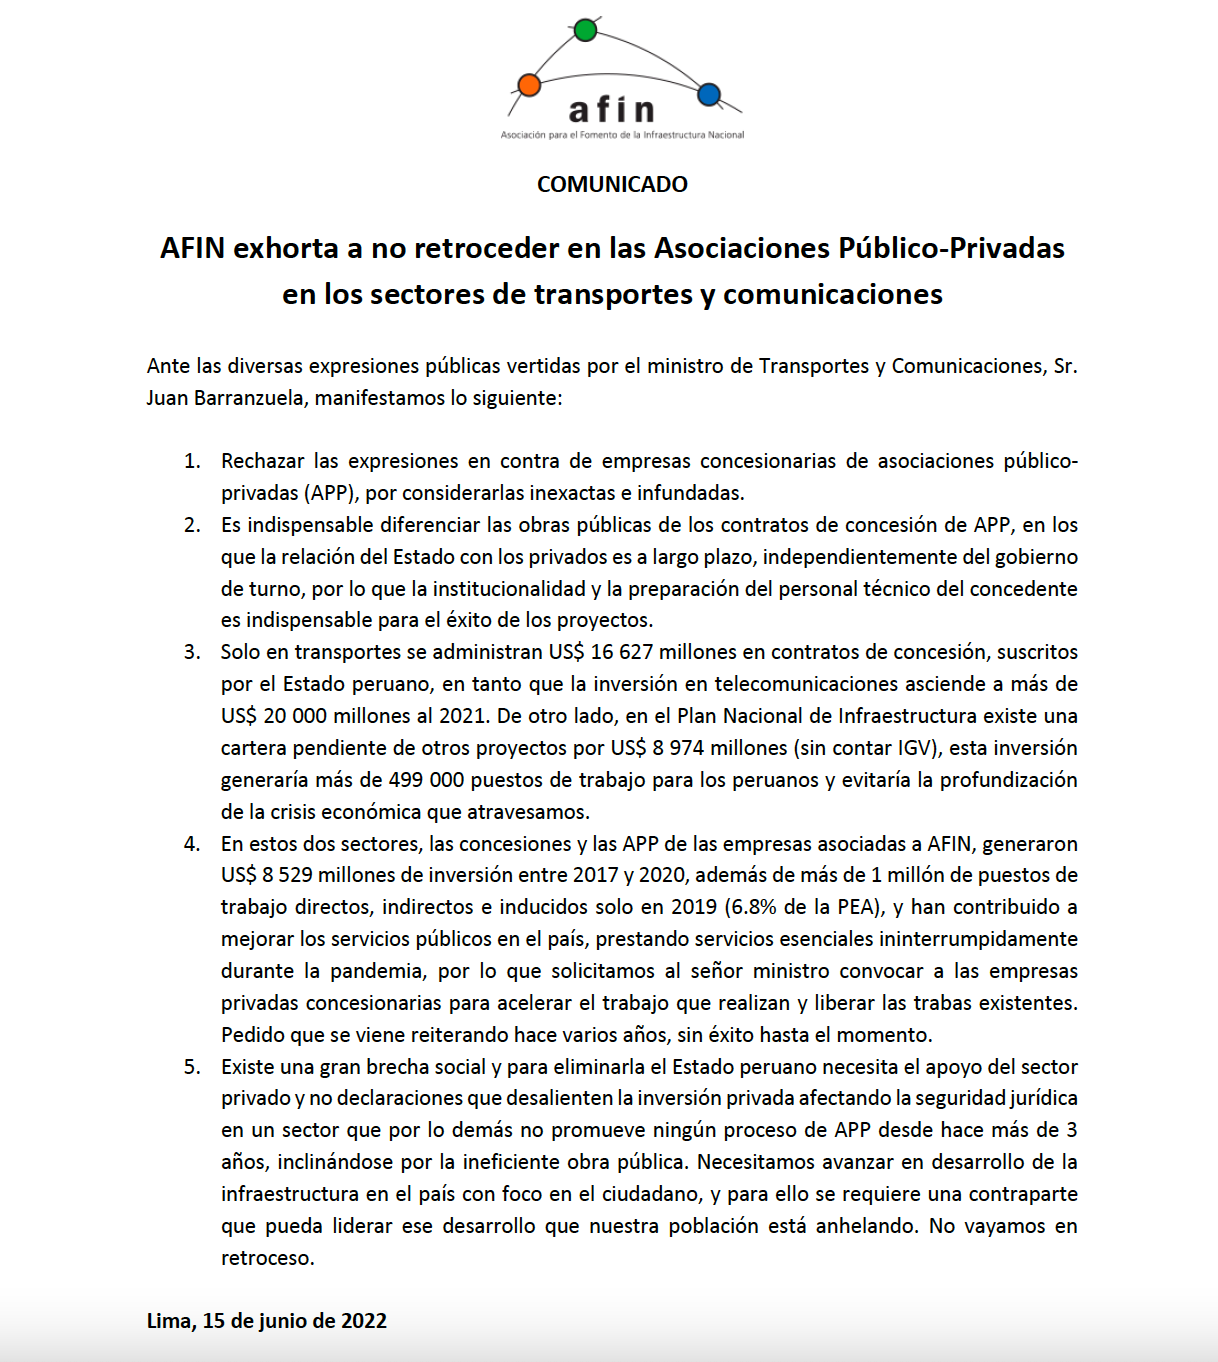  AFIN exhorta a no retroceder en las Asociaciones Público-Privadas en los sectores de transportes y comunicaciones 